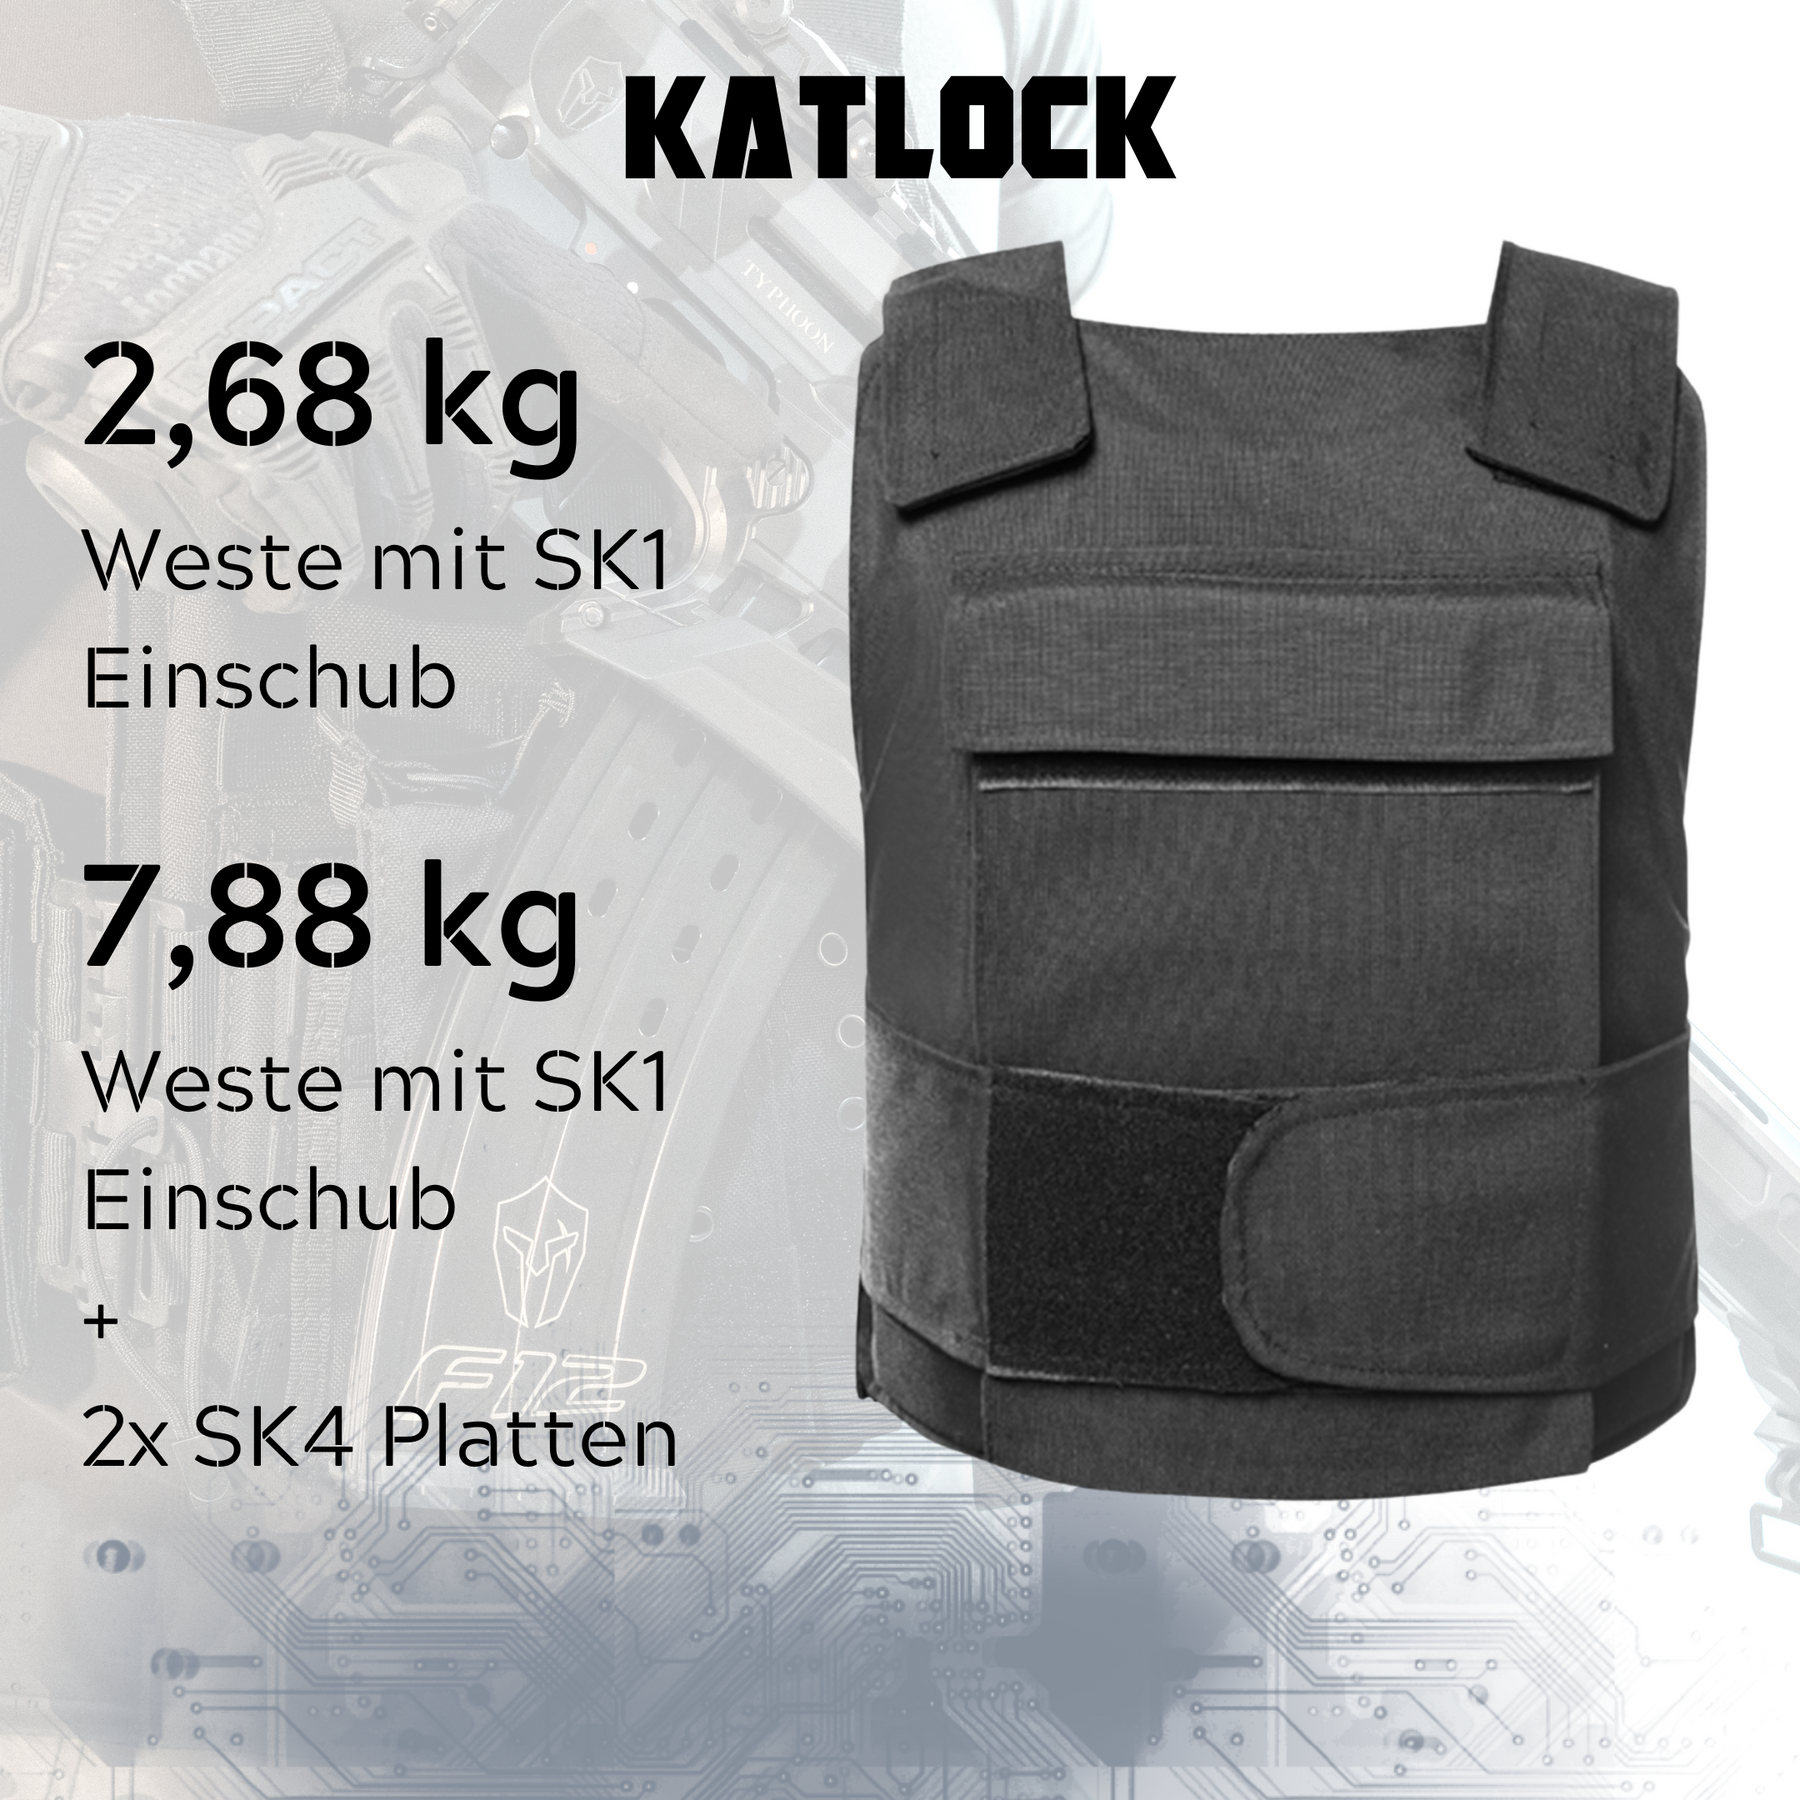 KATLOCK schusssichere Weste SK1 + Traumaplatte SK4